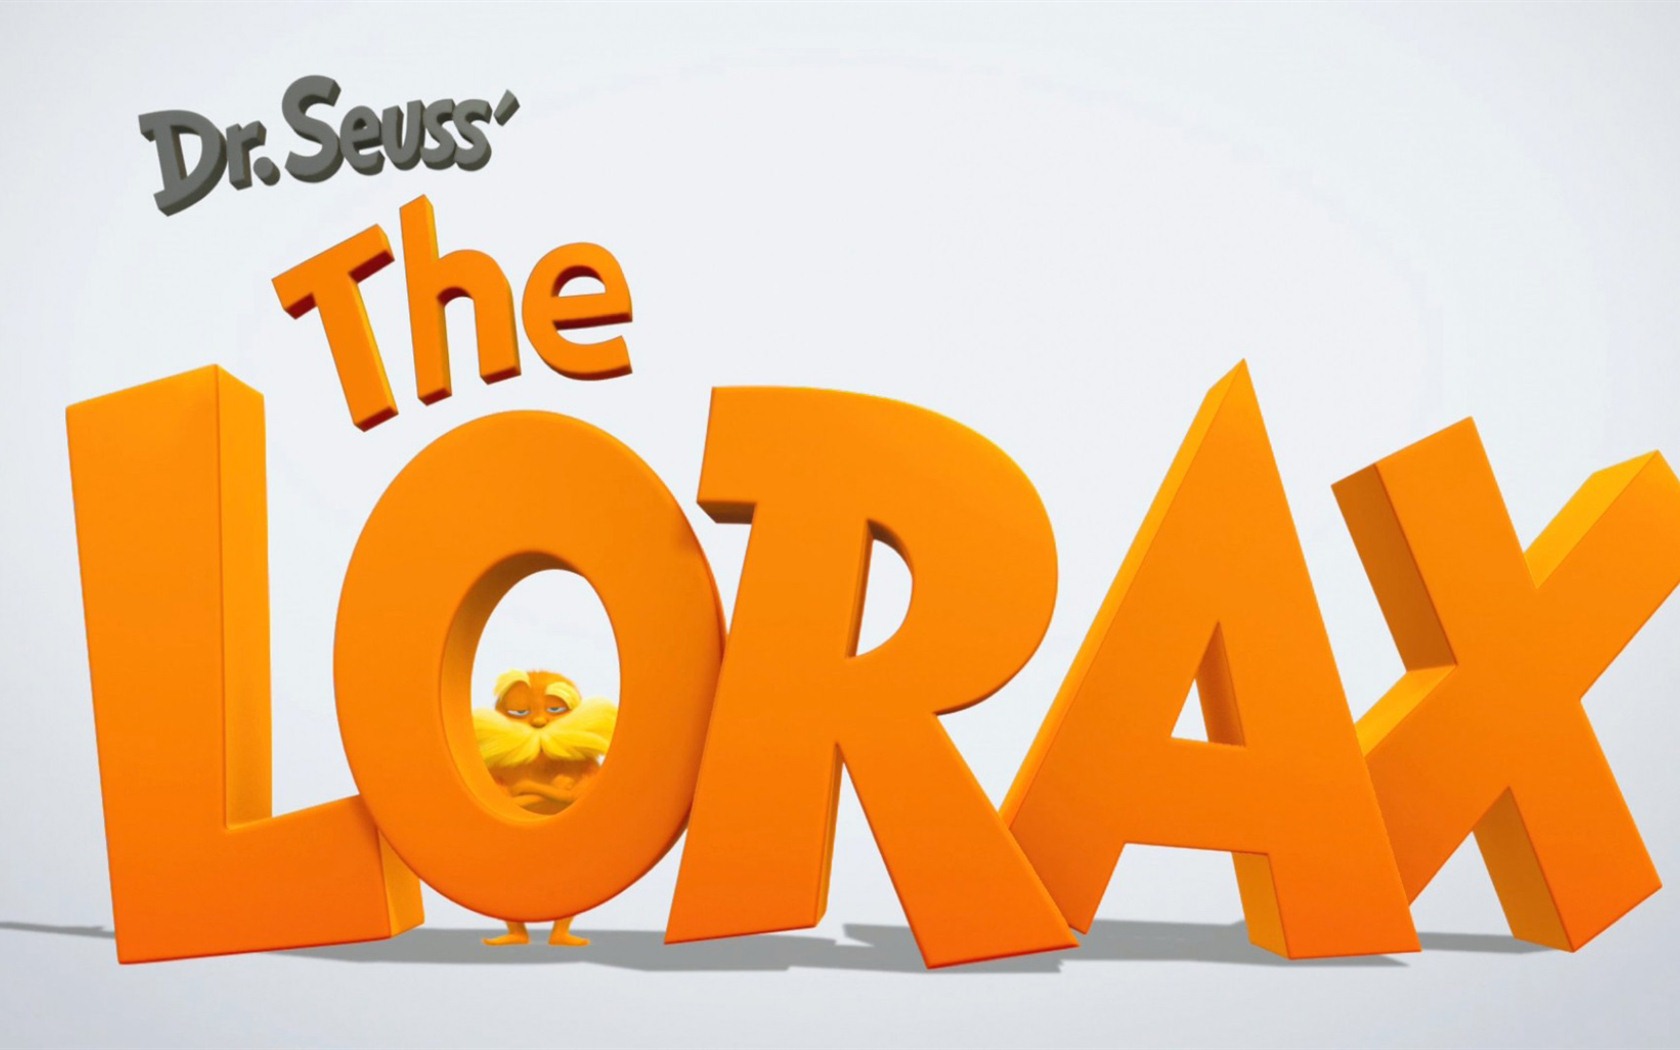 Dr. Seuss The Lorax 老雷斯的故事 高清壁纸1 - 1680x1050